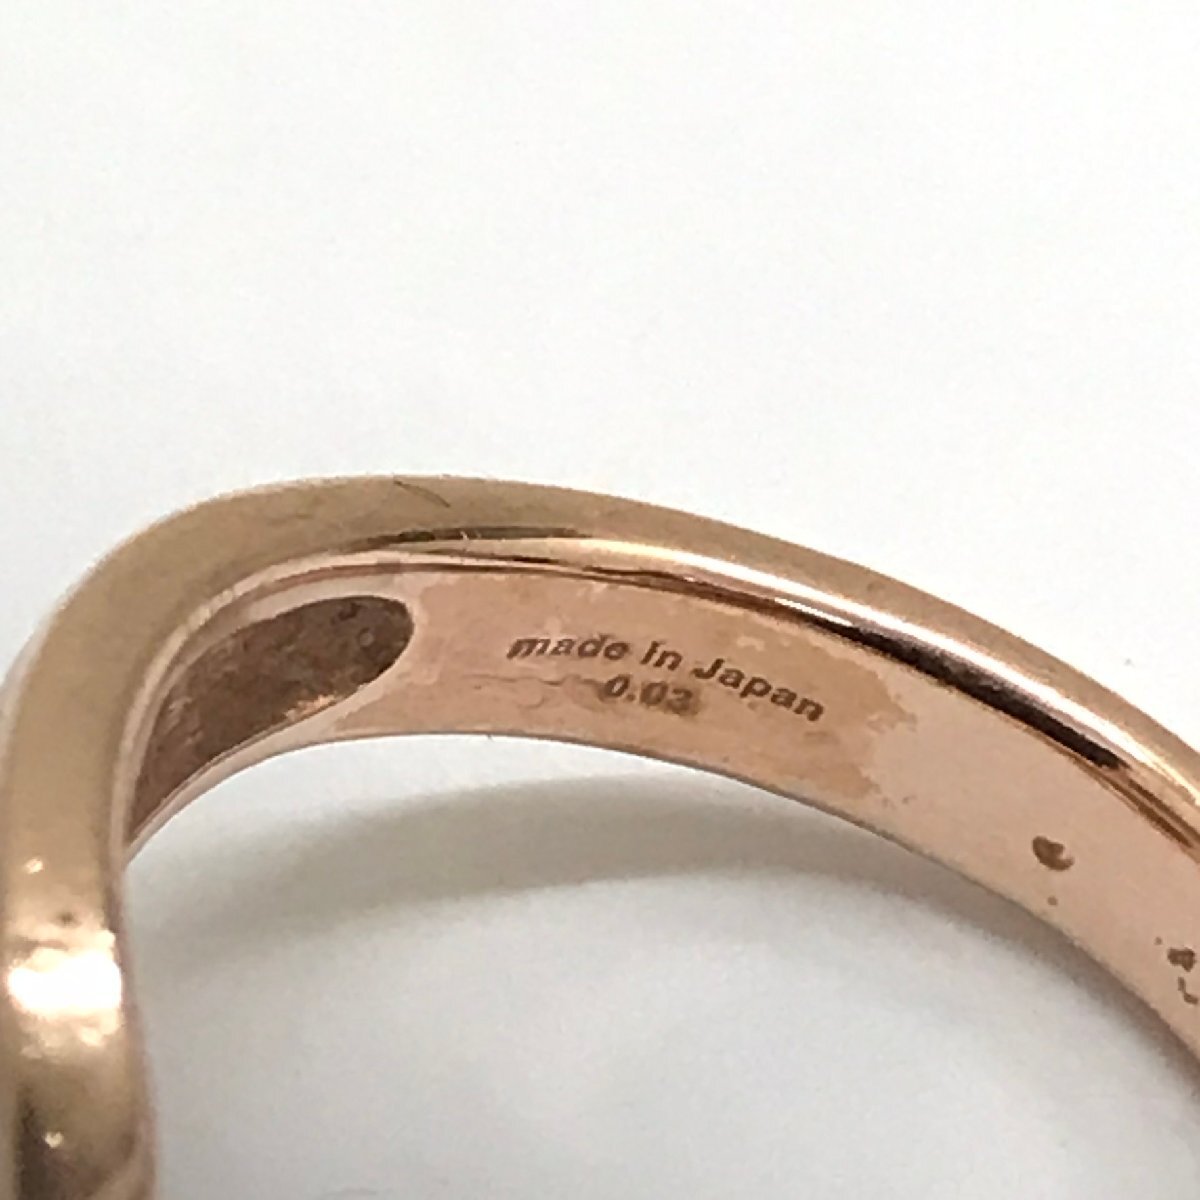 中古品 Leda Silma レダシルマ Ge K10 指輪 リング ダイヤ0.03ct 重量7.8g サイズ19号 金投資 質屋出品